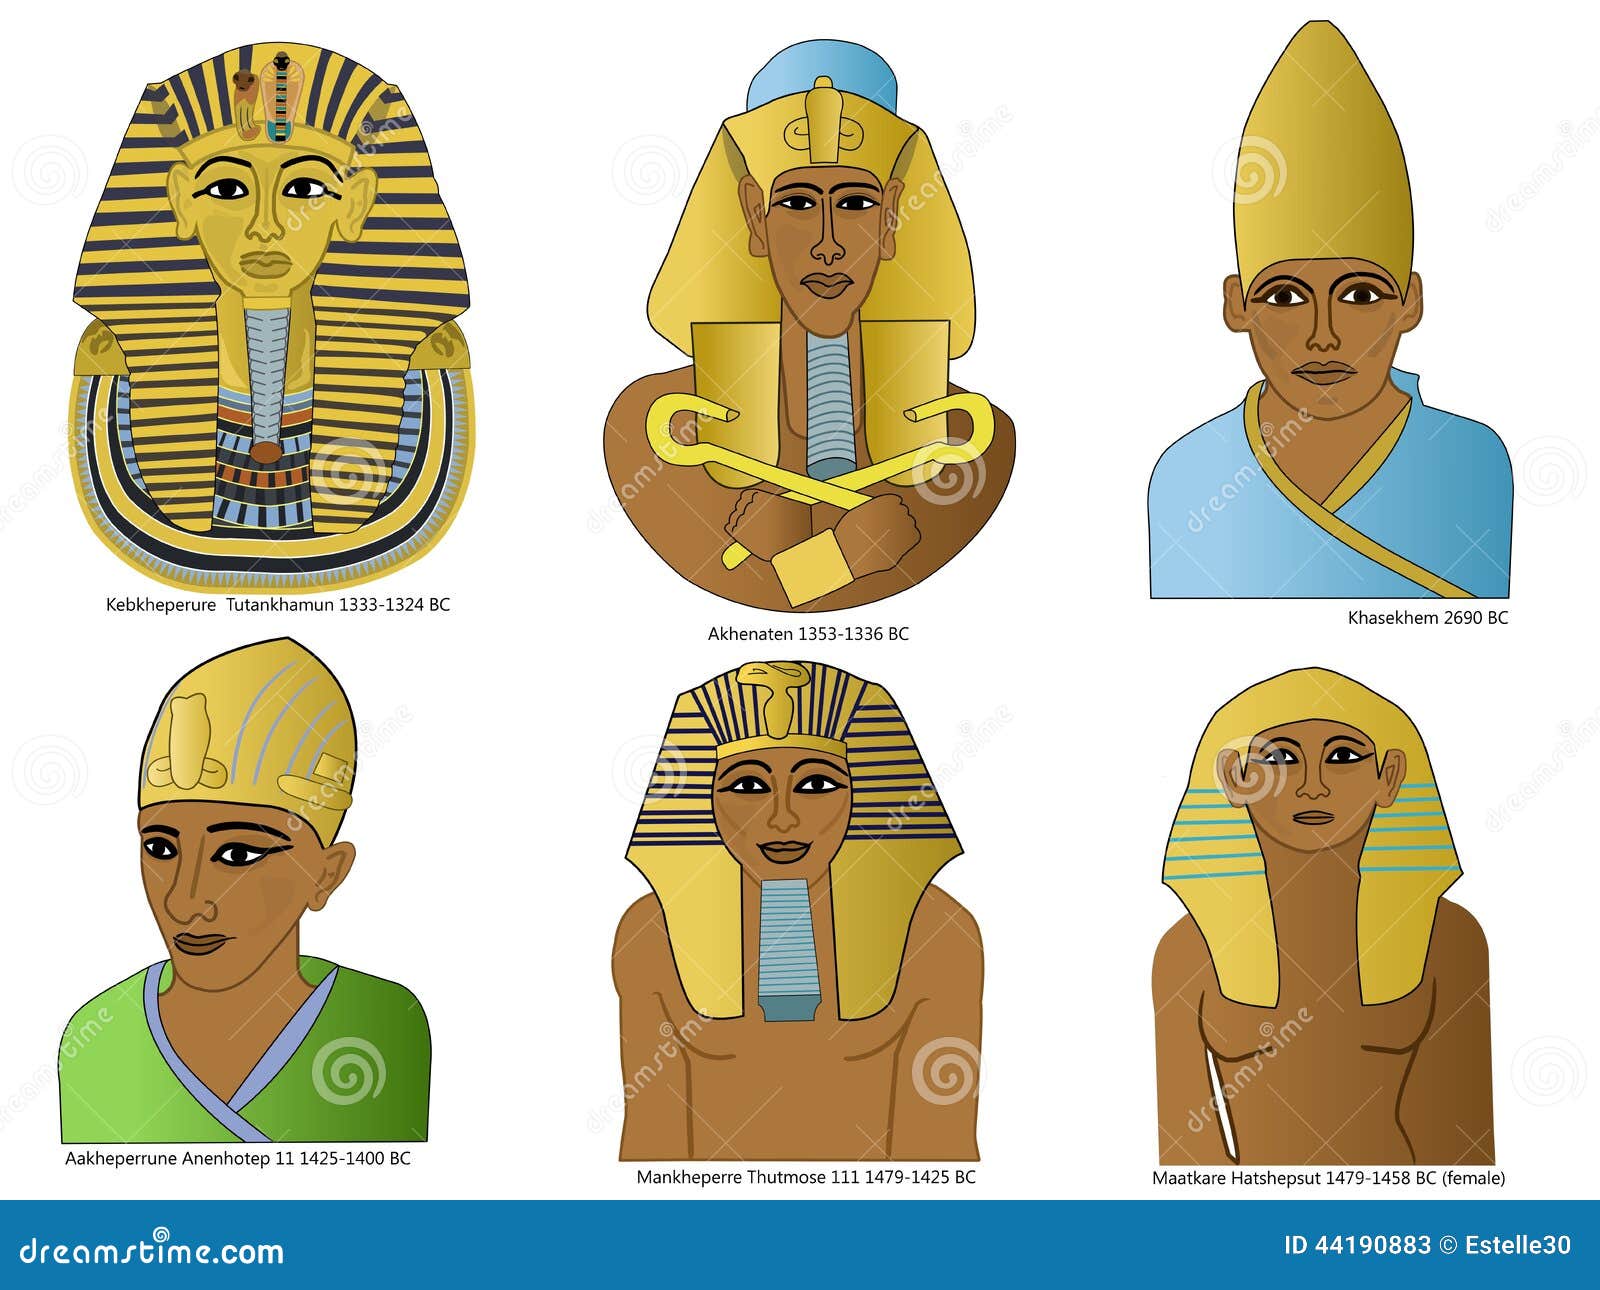 All Pharaohs Of Egypt